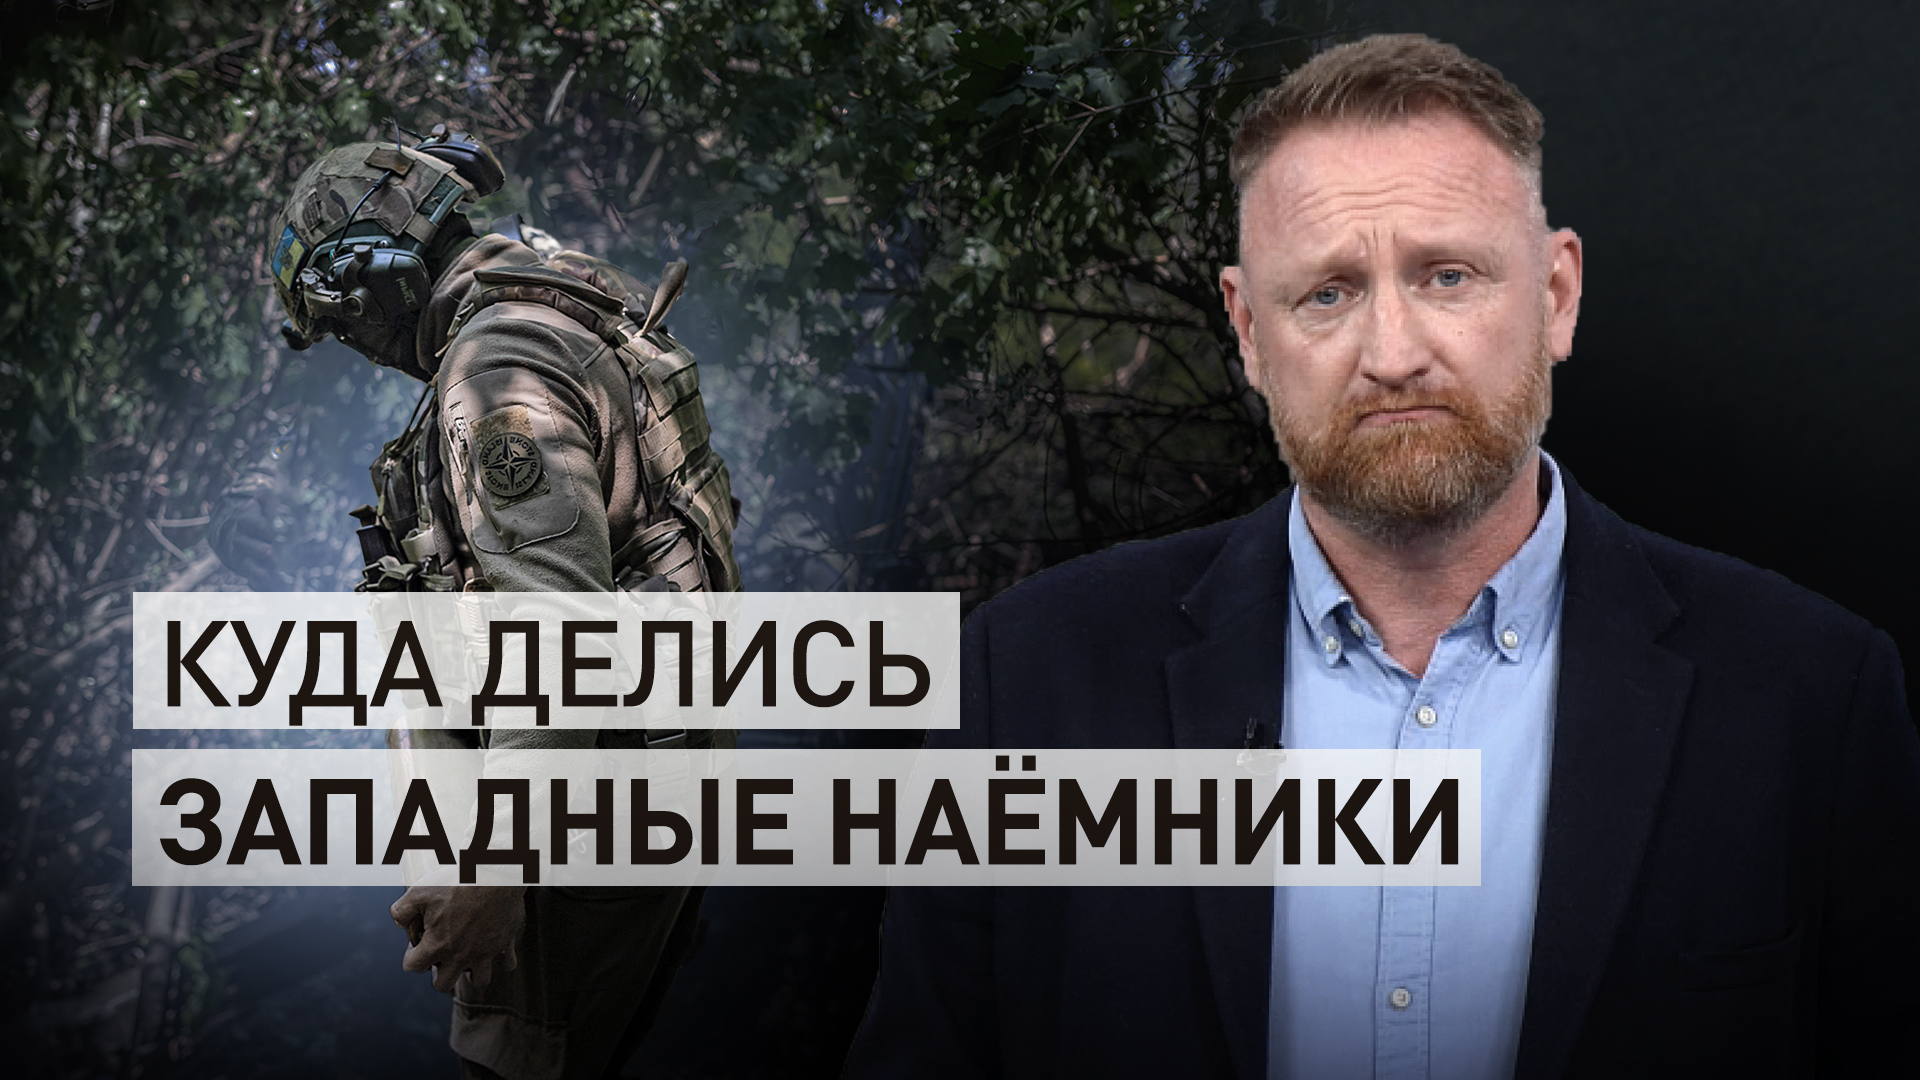 Передумали сражаться за «демократию»: почему иностранные наёмники больше не едут на Украину